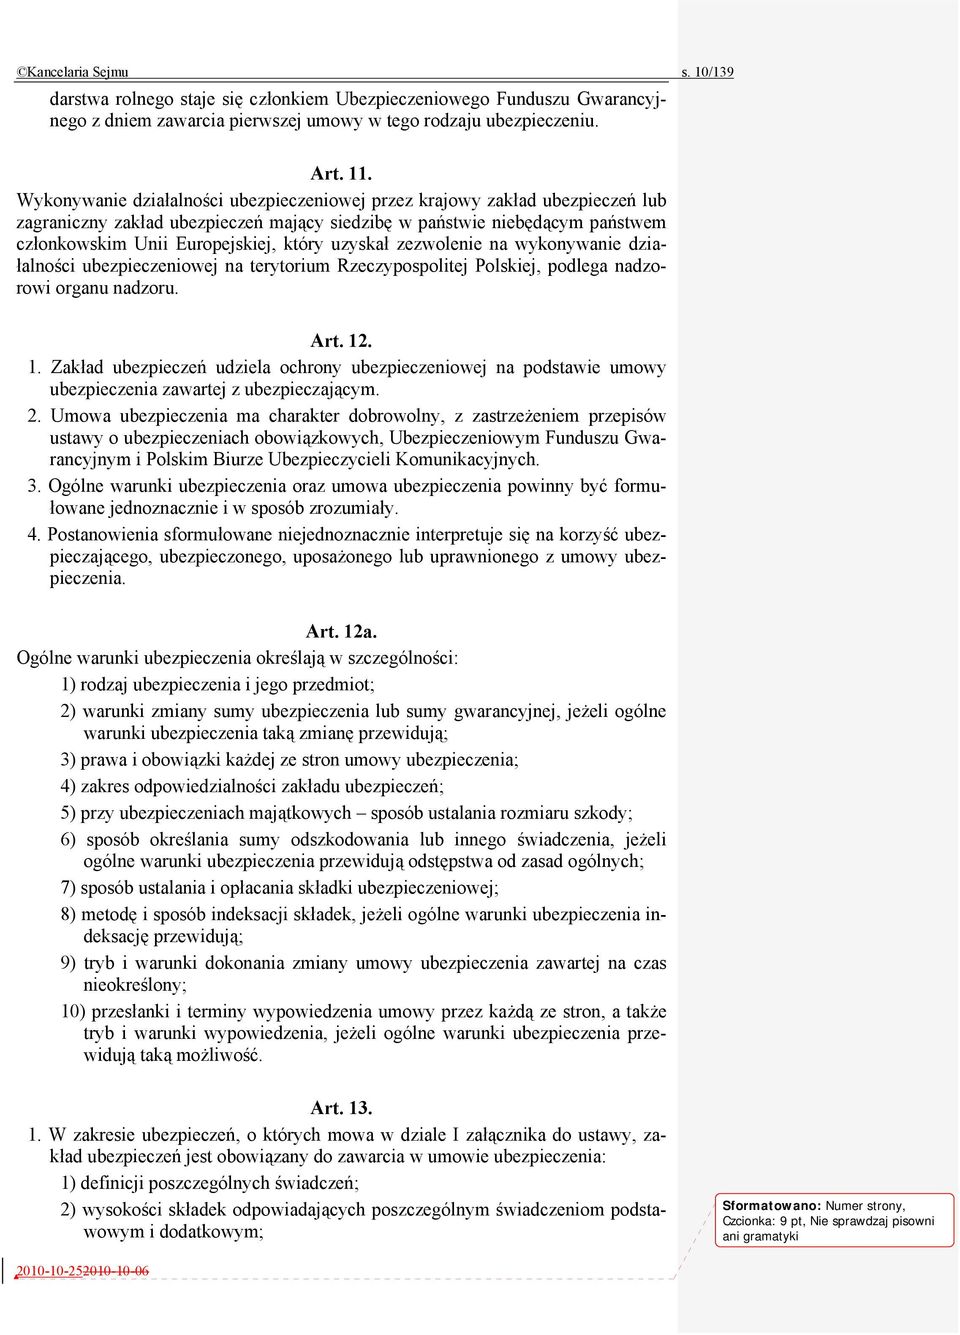 uzyskał zezwolenie na wykonywanie działalności ubezpieczeniowej na terytorium Rzeczypospolitej Polskiej, podlega nadzorowi organu nadzoru. Art. 12